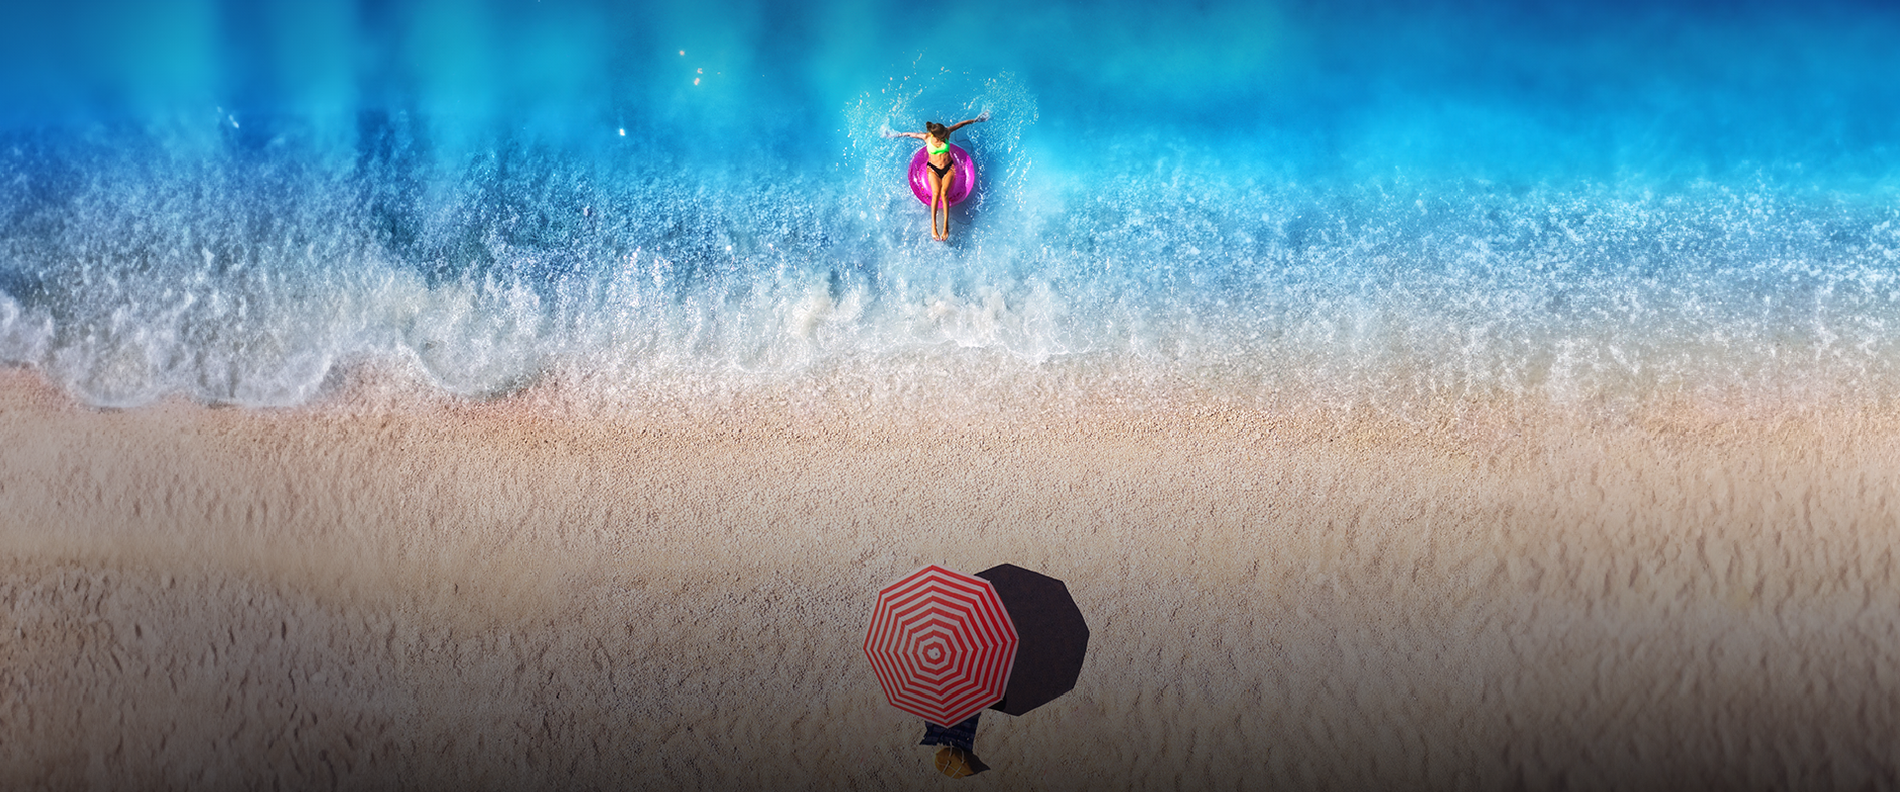 una mujer flota en un flotador en el océano mientras sostiene un paraguas a rayas rojas y blancas